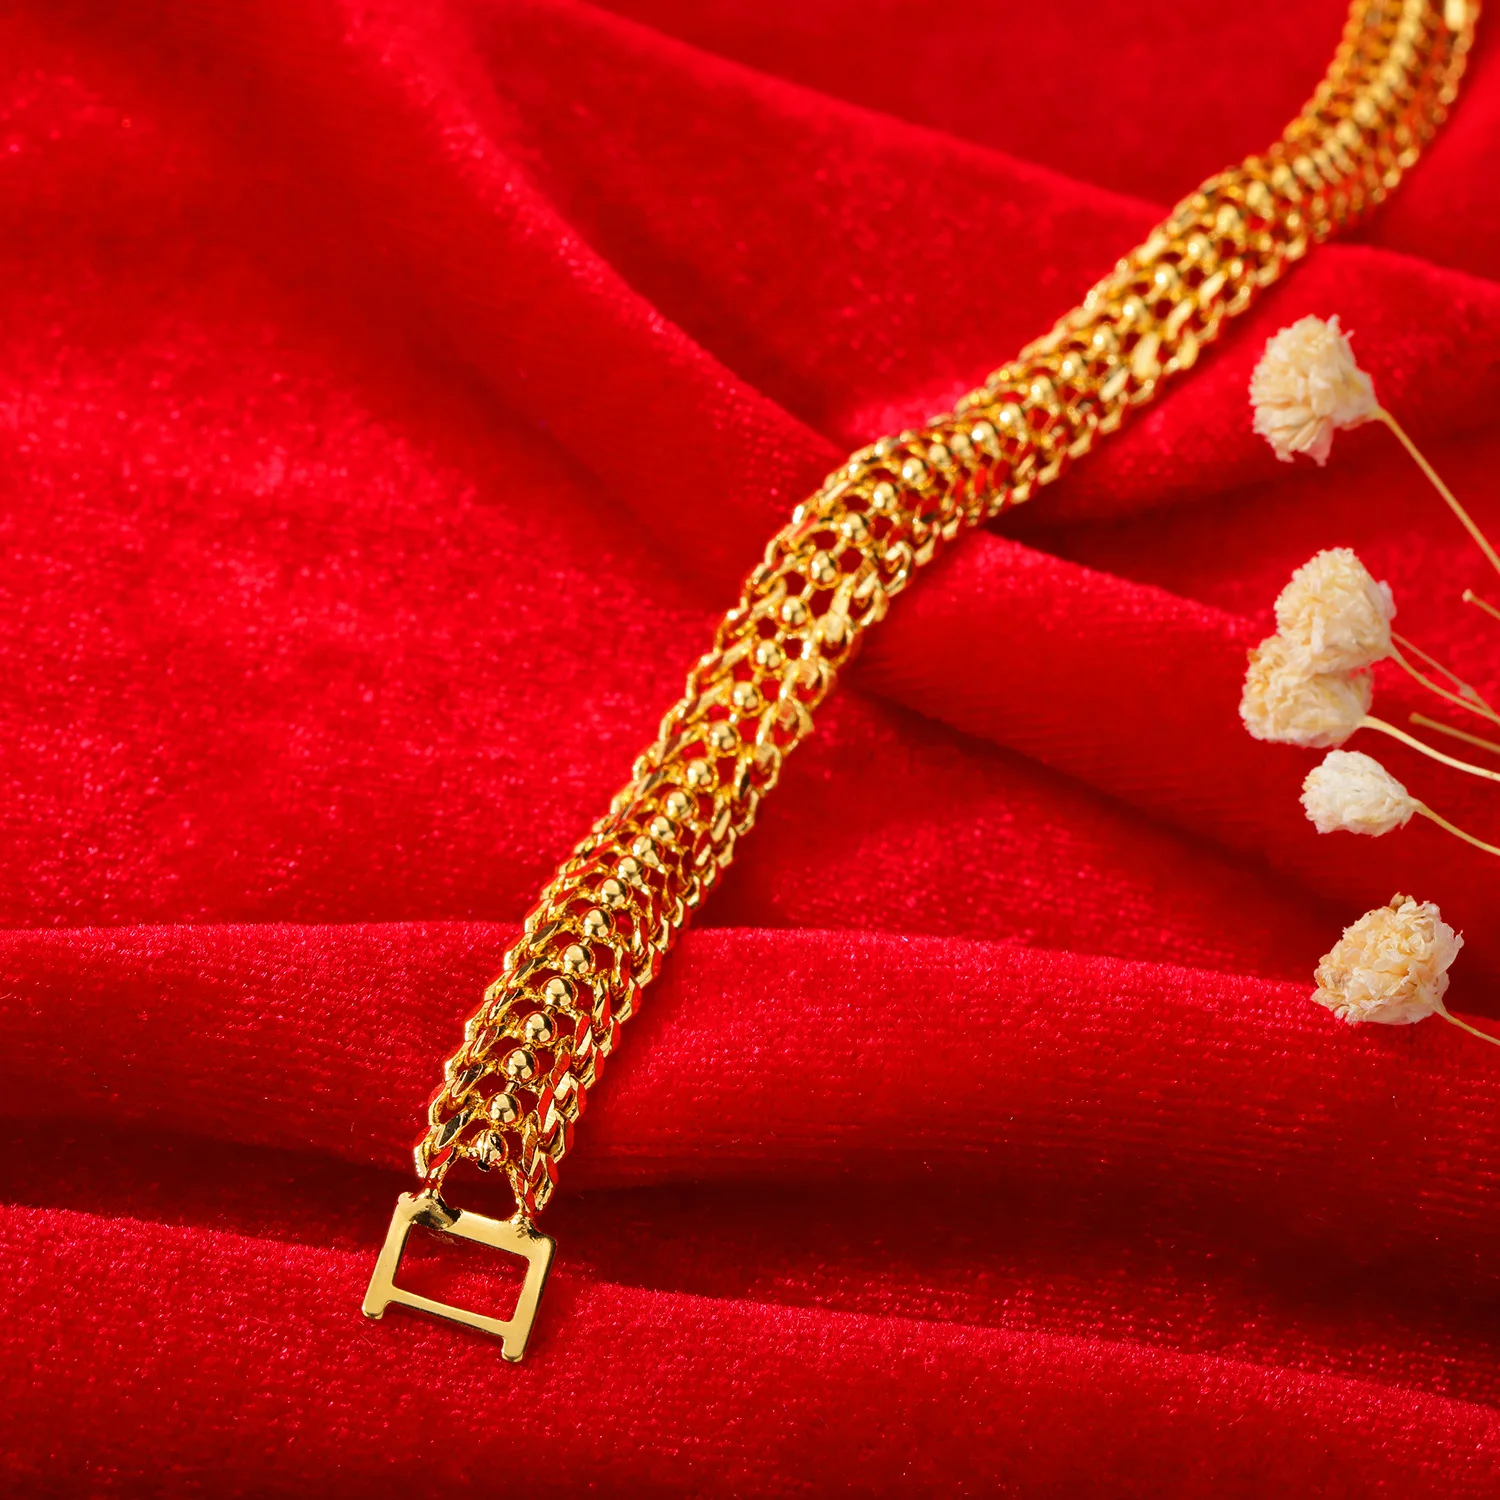 TB-122 Europejska i amerykańska moda gorąca sprzedaż Walentynki kreatywny prezent miedź pozłacane panie bransoletka biżuteria